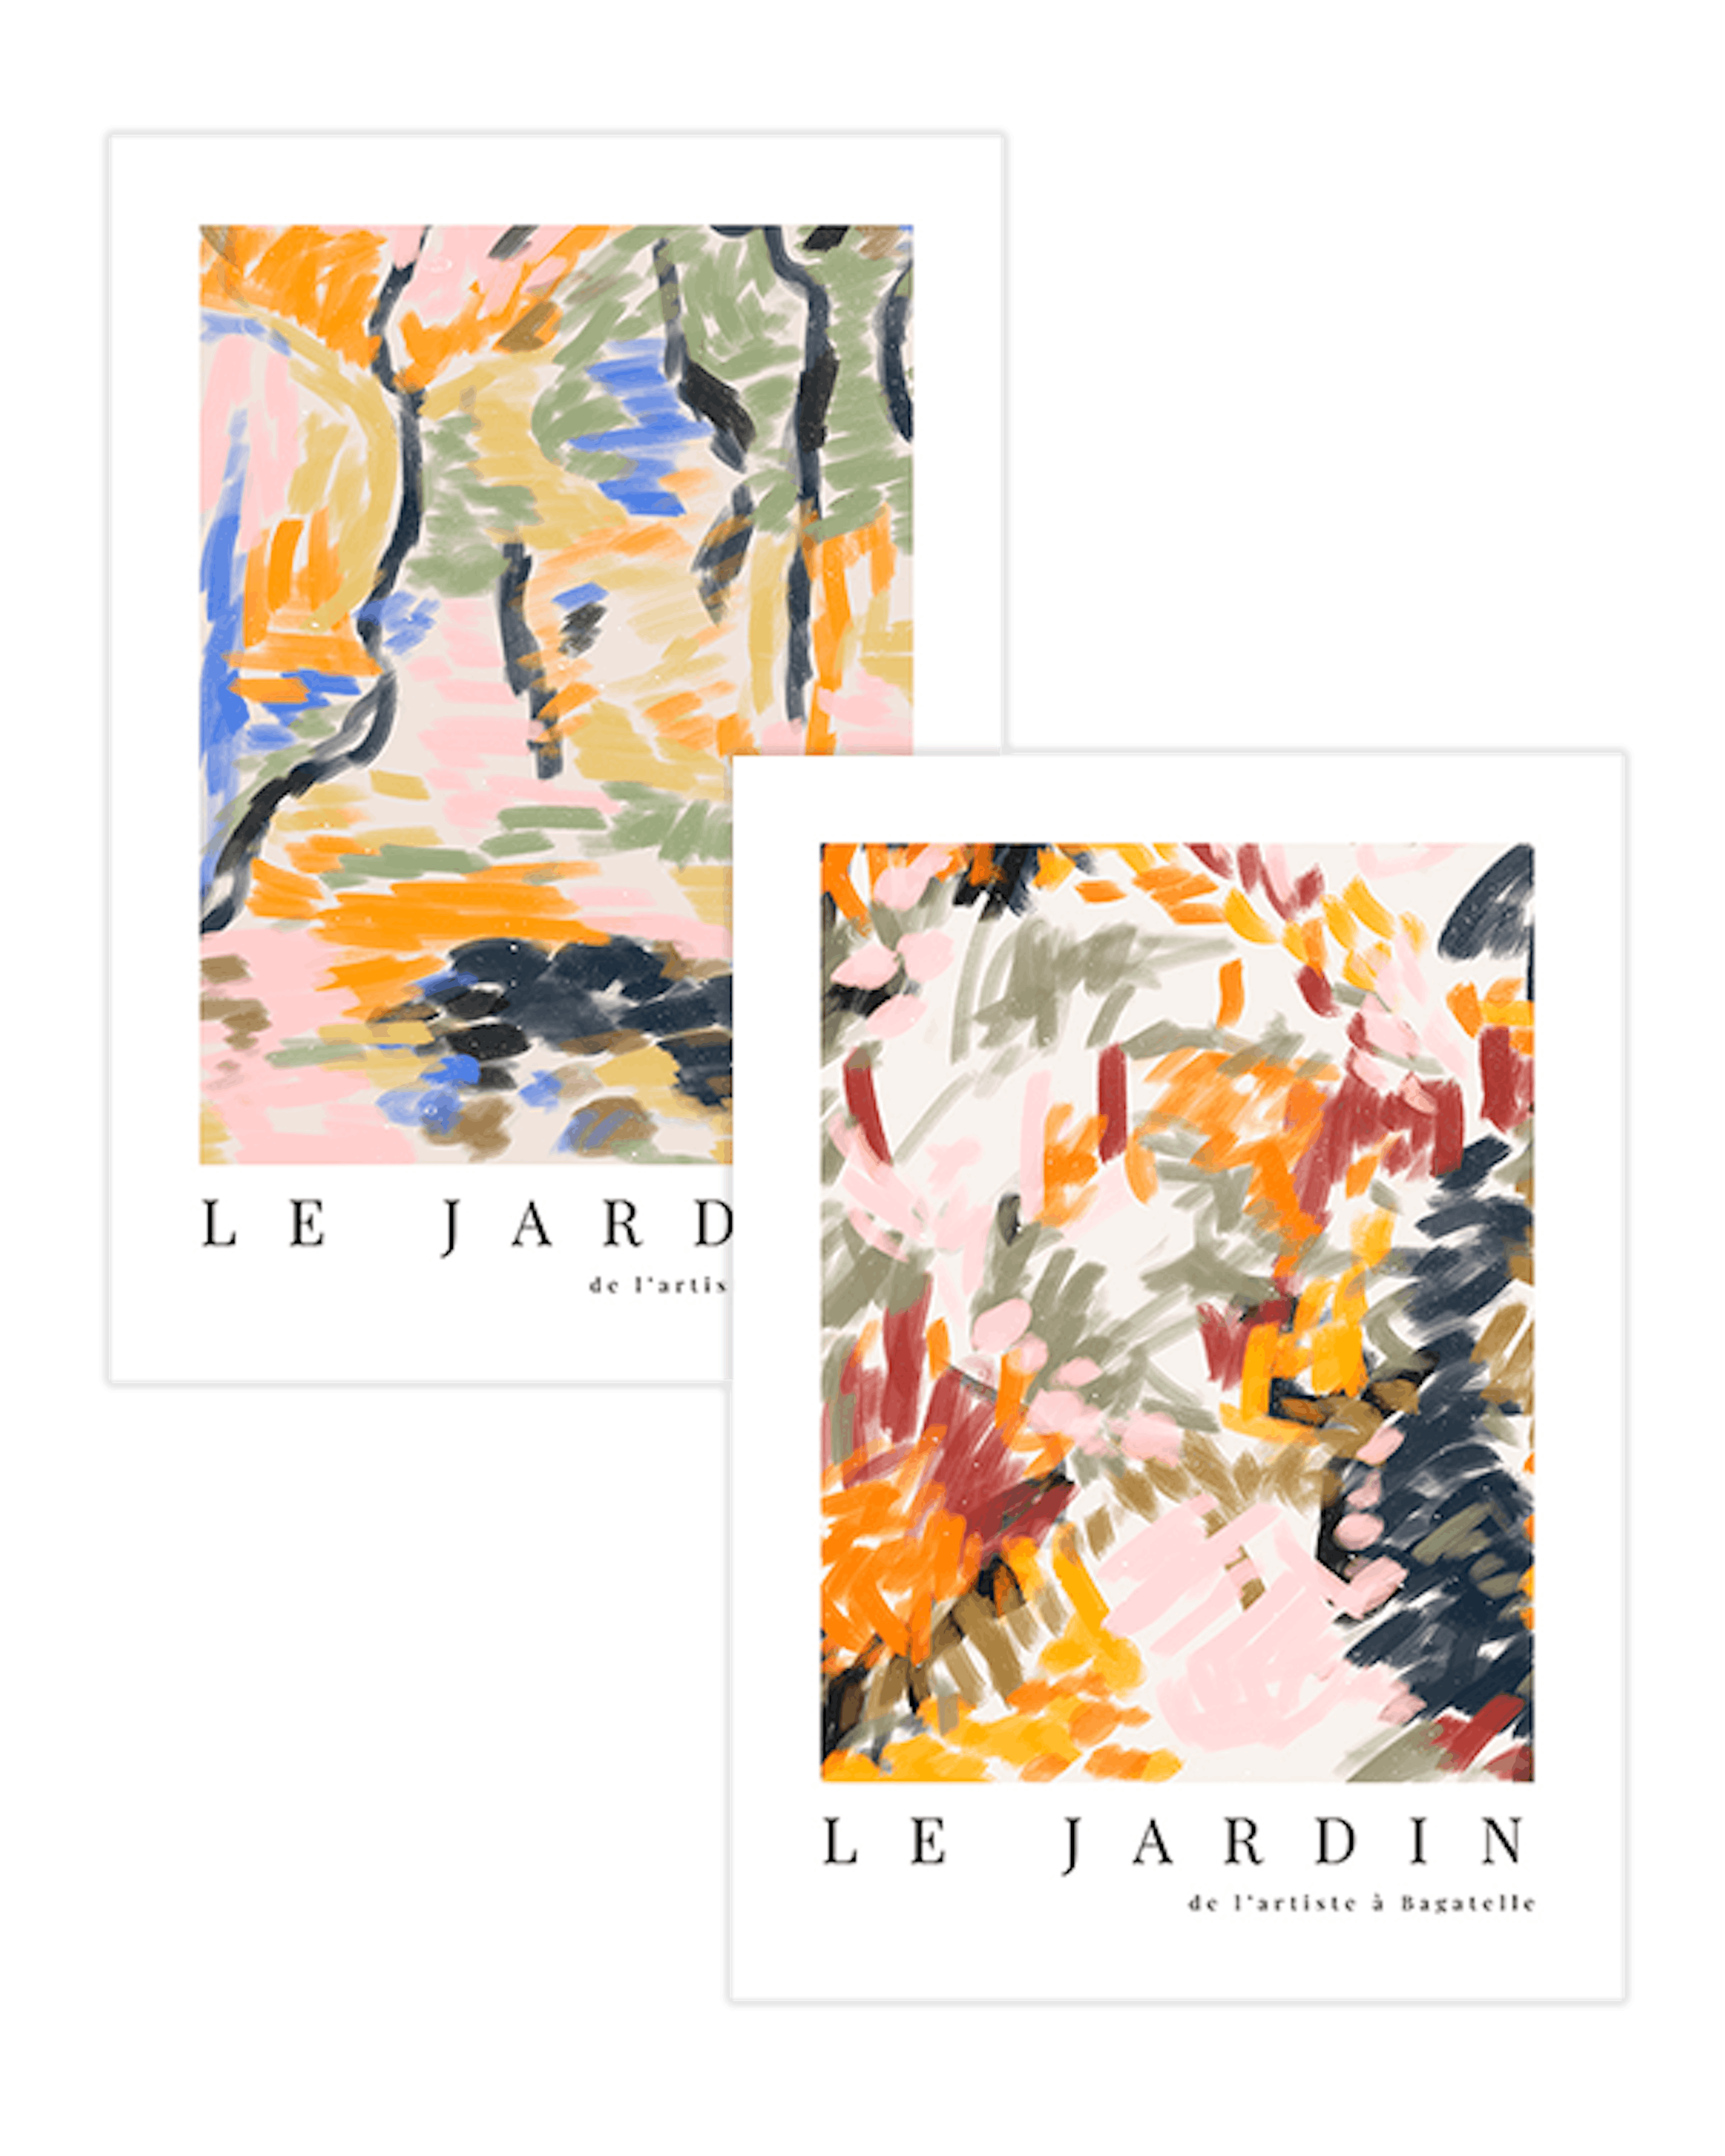 Le Jardin Duo pacchetto di poster